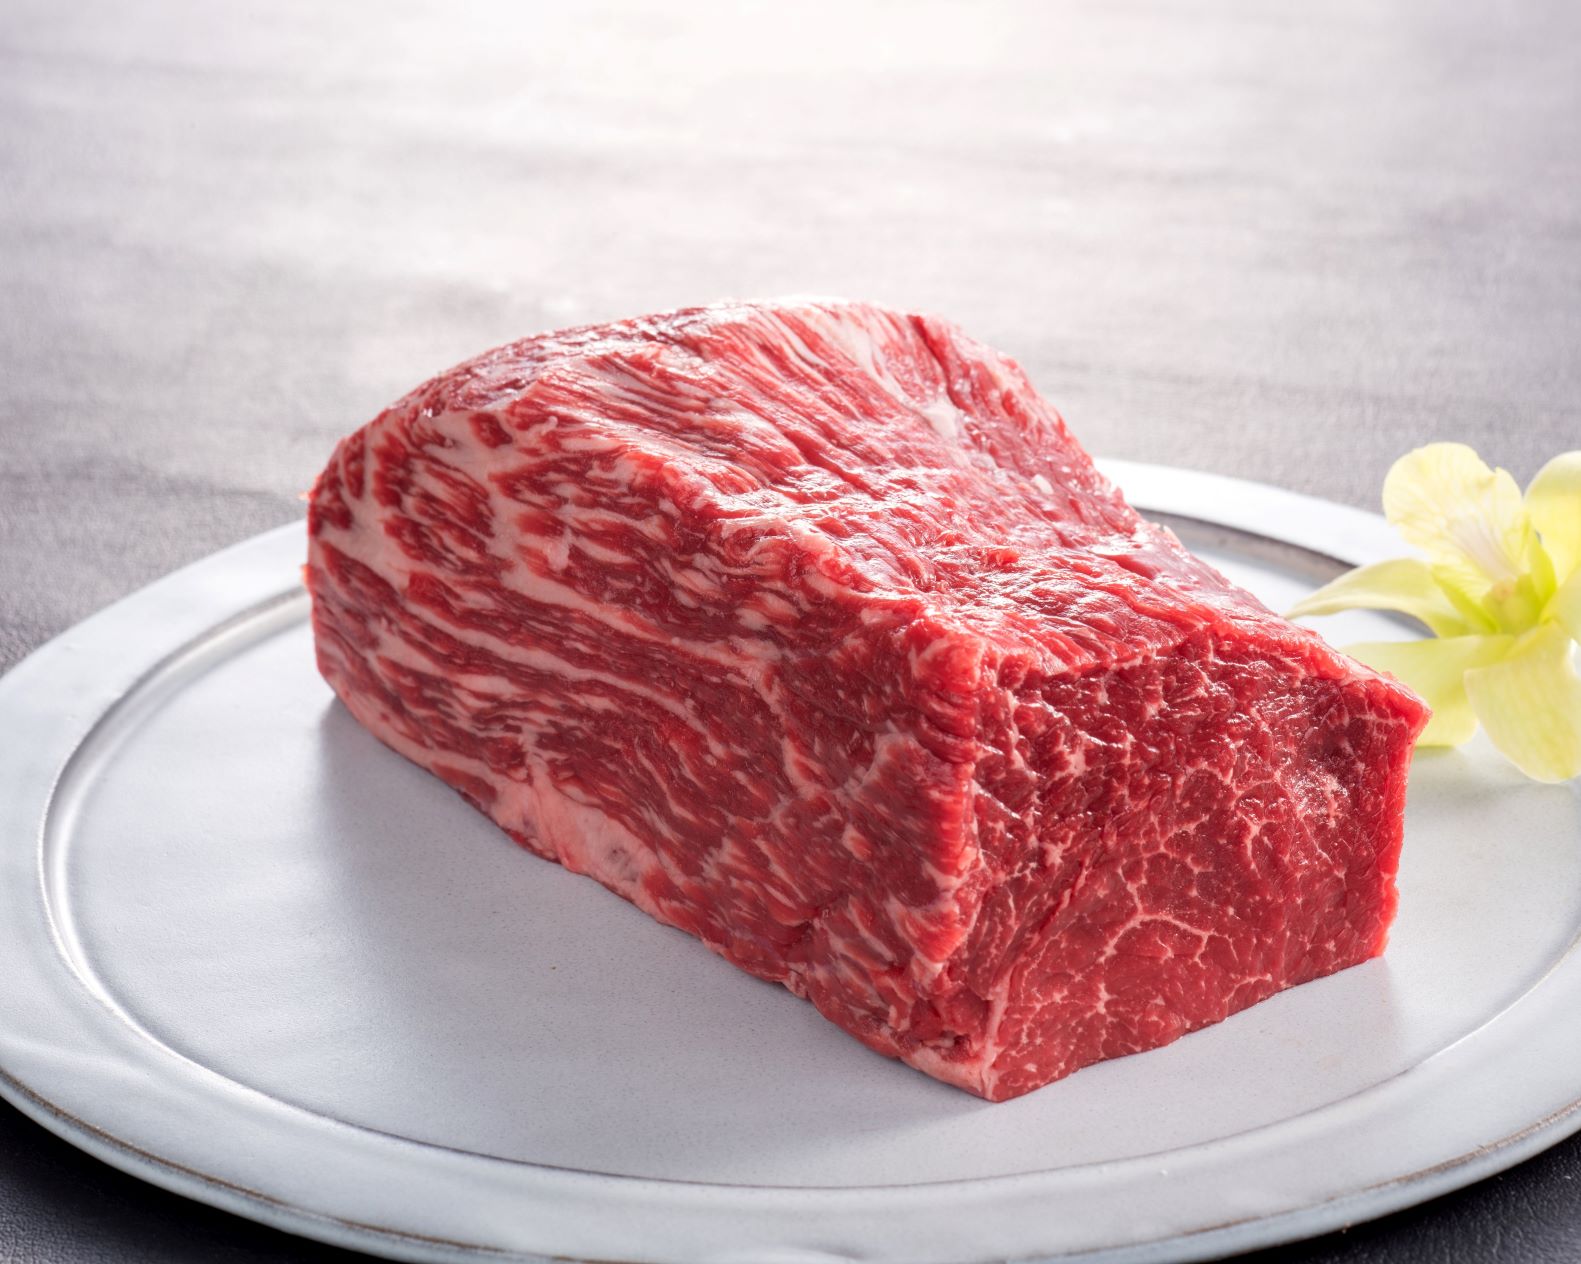 457 松阪牛ローストビーフ用ブロック肉500g×2コ